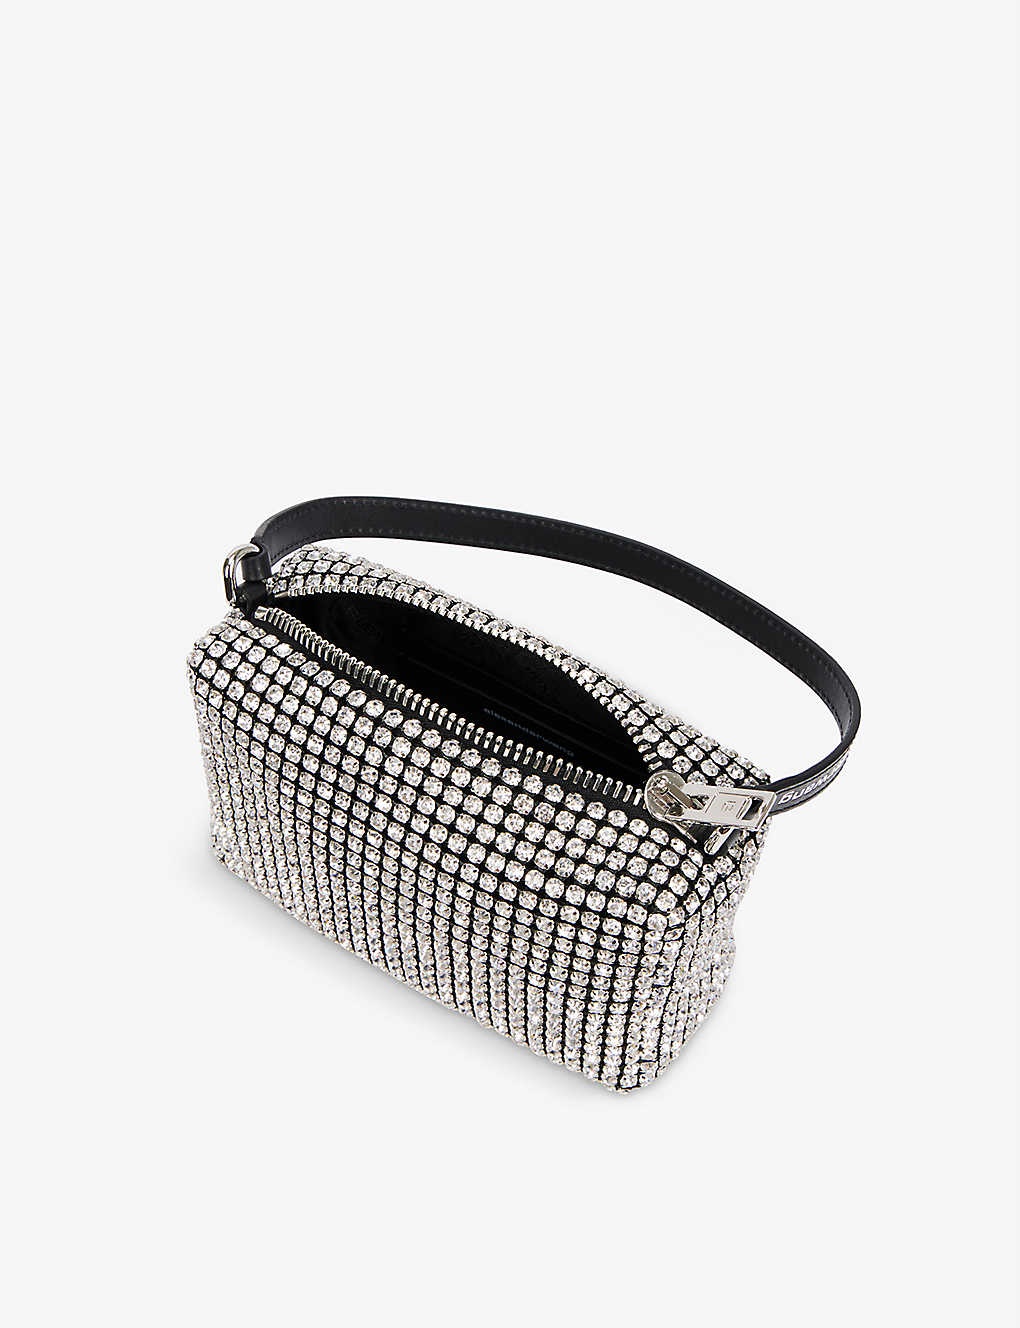 Heiress crystal-embellished leather top handle bag - 4